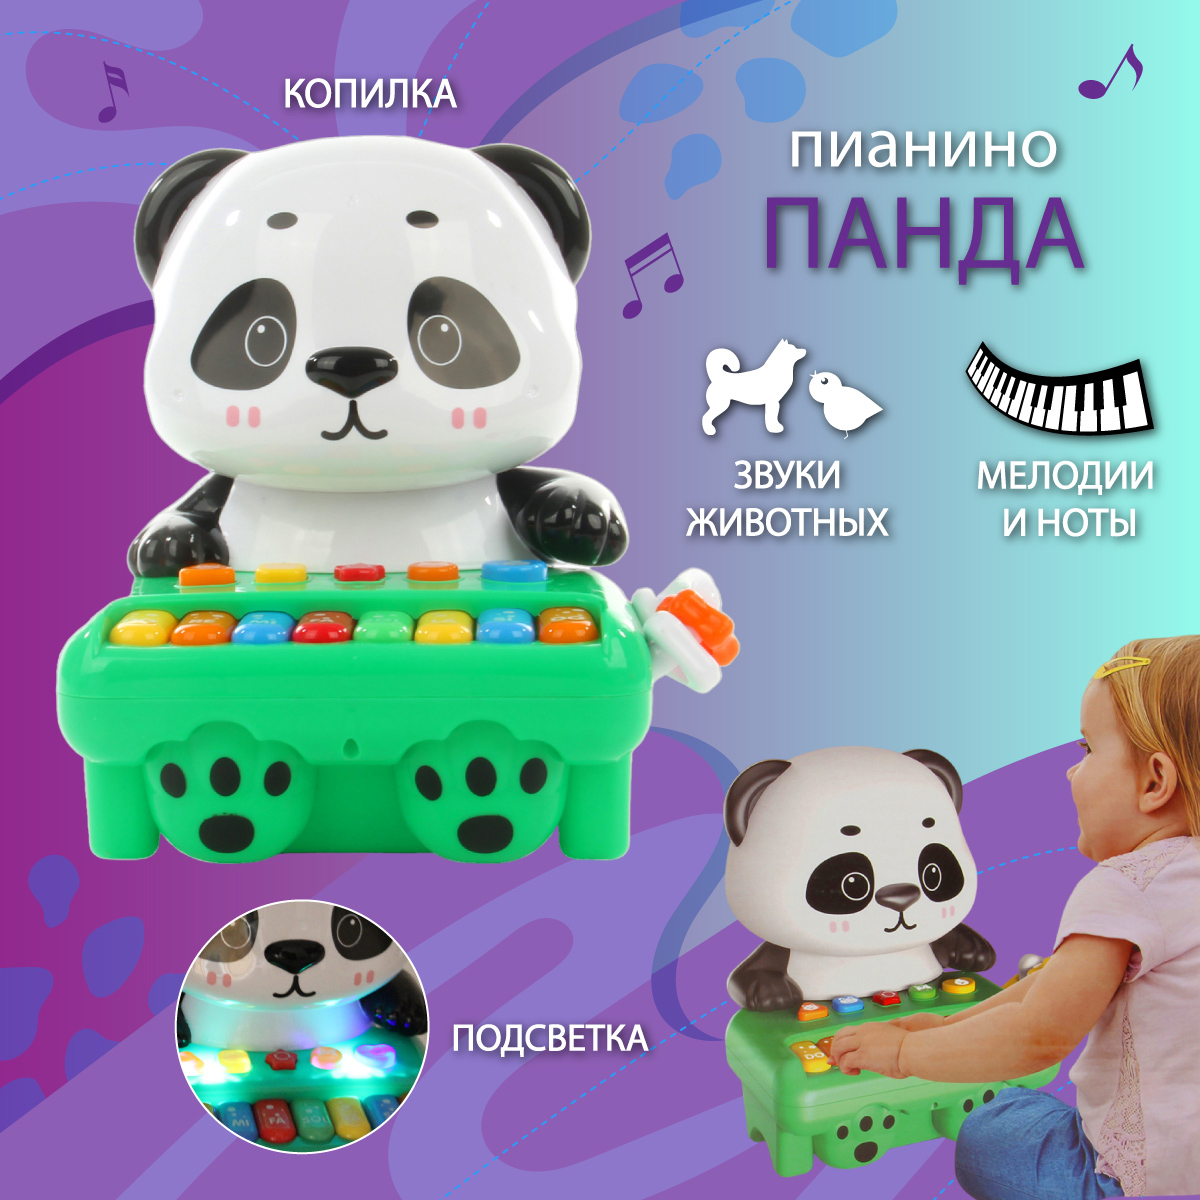 Музыкальные игрушки Veld Co Пианино с копилкой Панда - фото 1